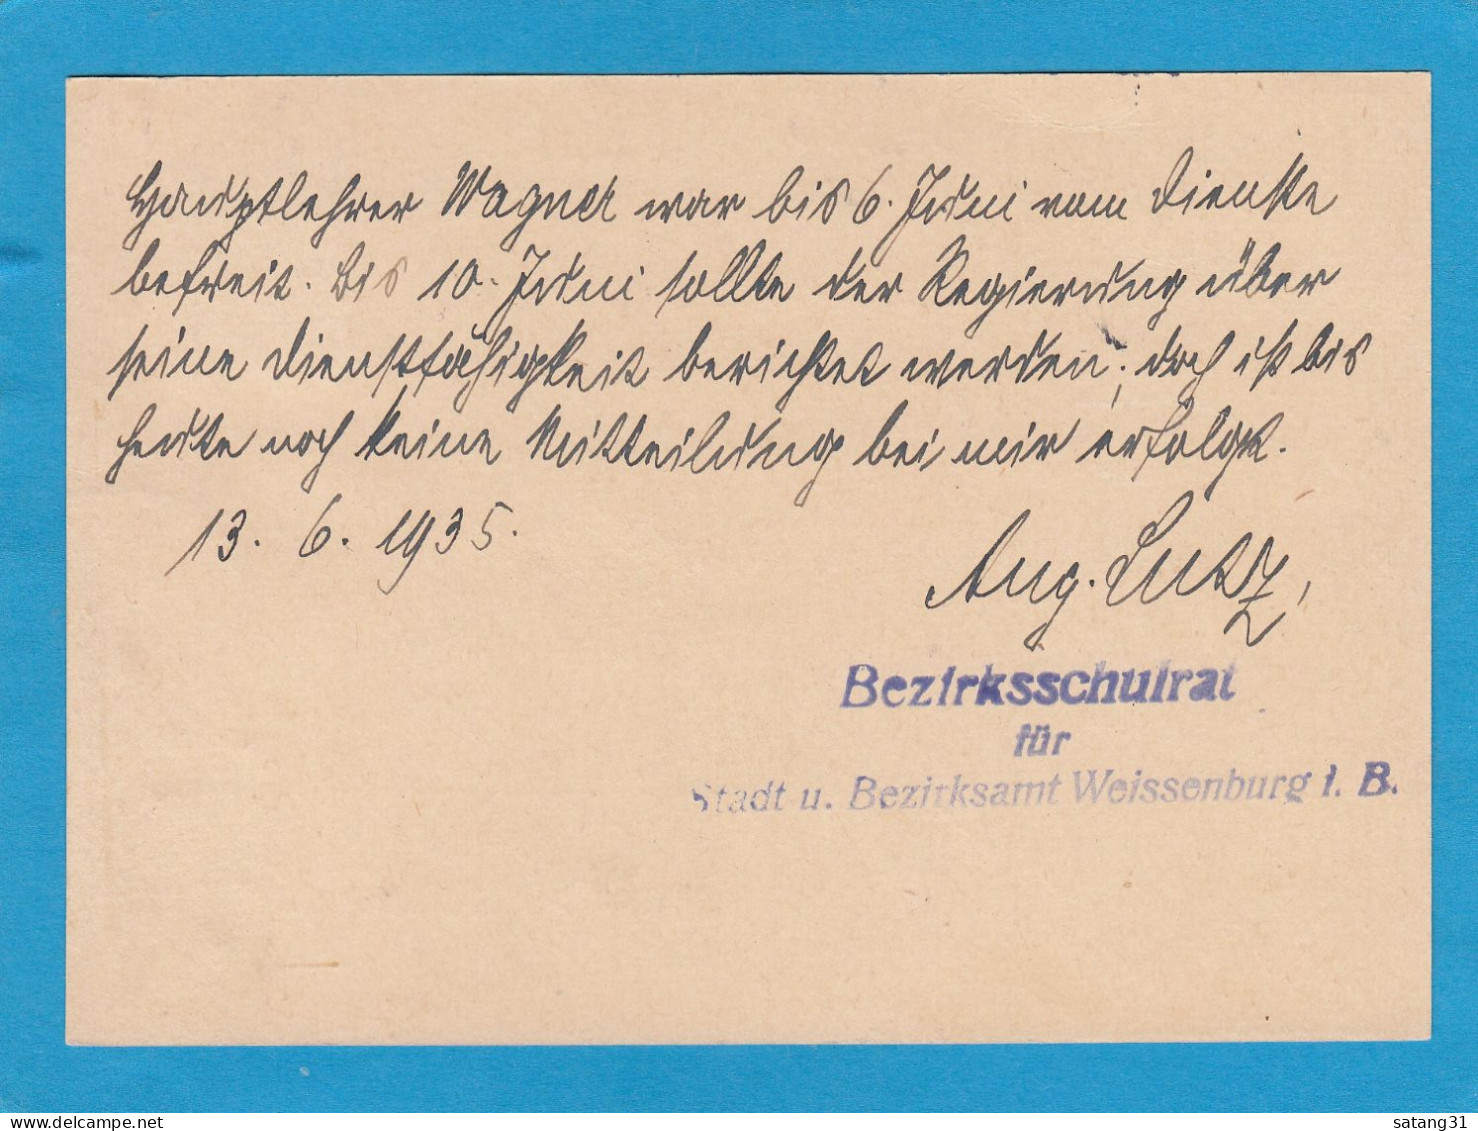 POSTKARTE VOM BEZIRKSSCHULRAT AUS WEISSENBURG NACH TREUCHTLINGEN,1935. - Officials